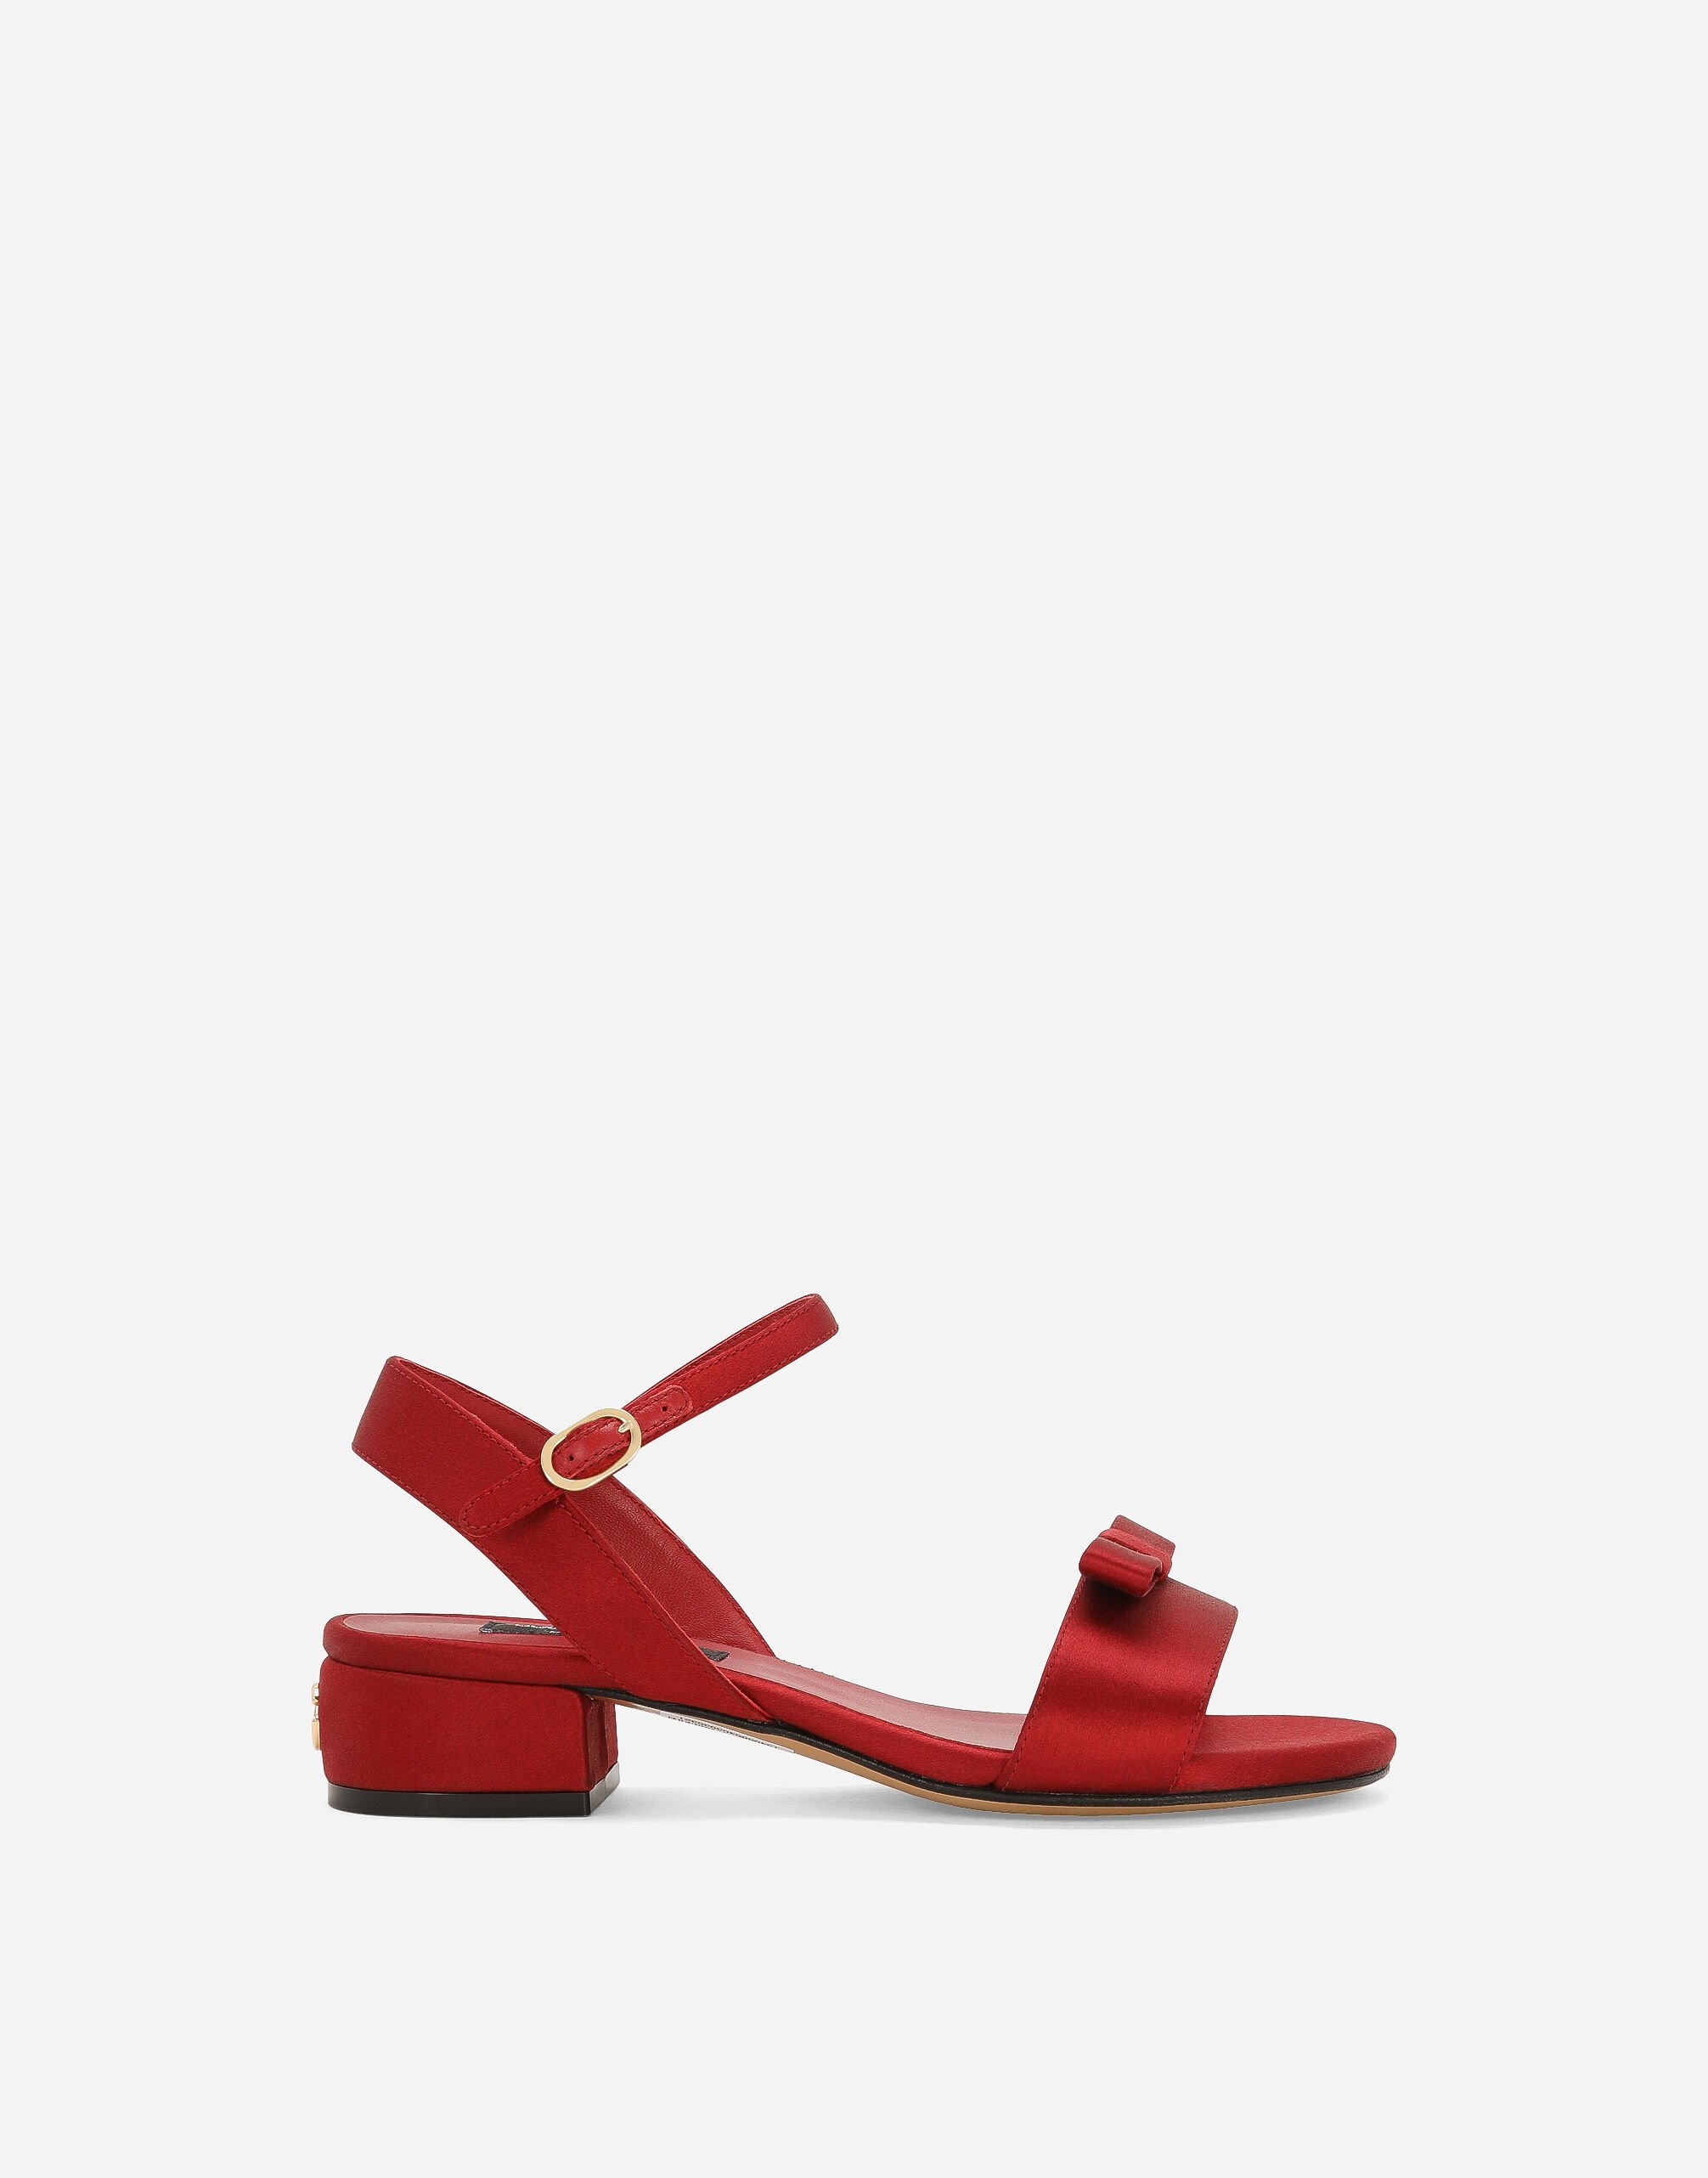 Dolce & Gabbana Satin sandals Red EB0003A1067